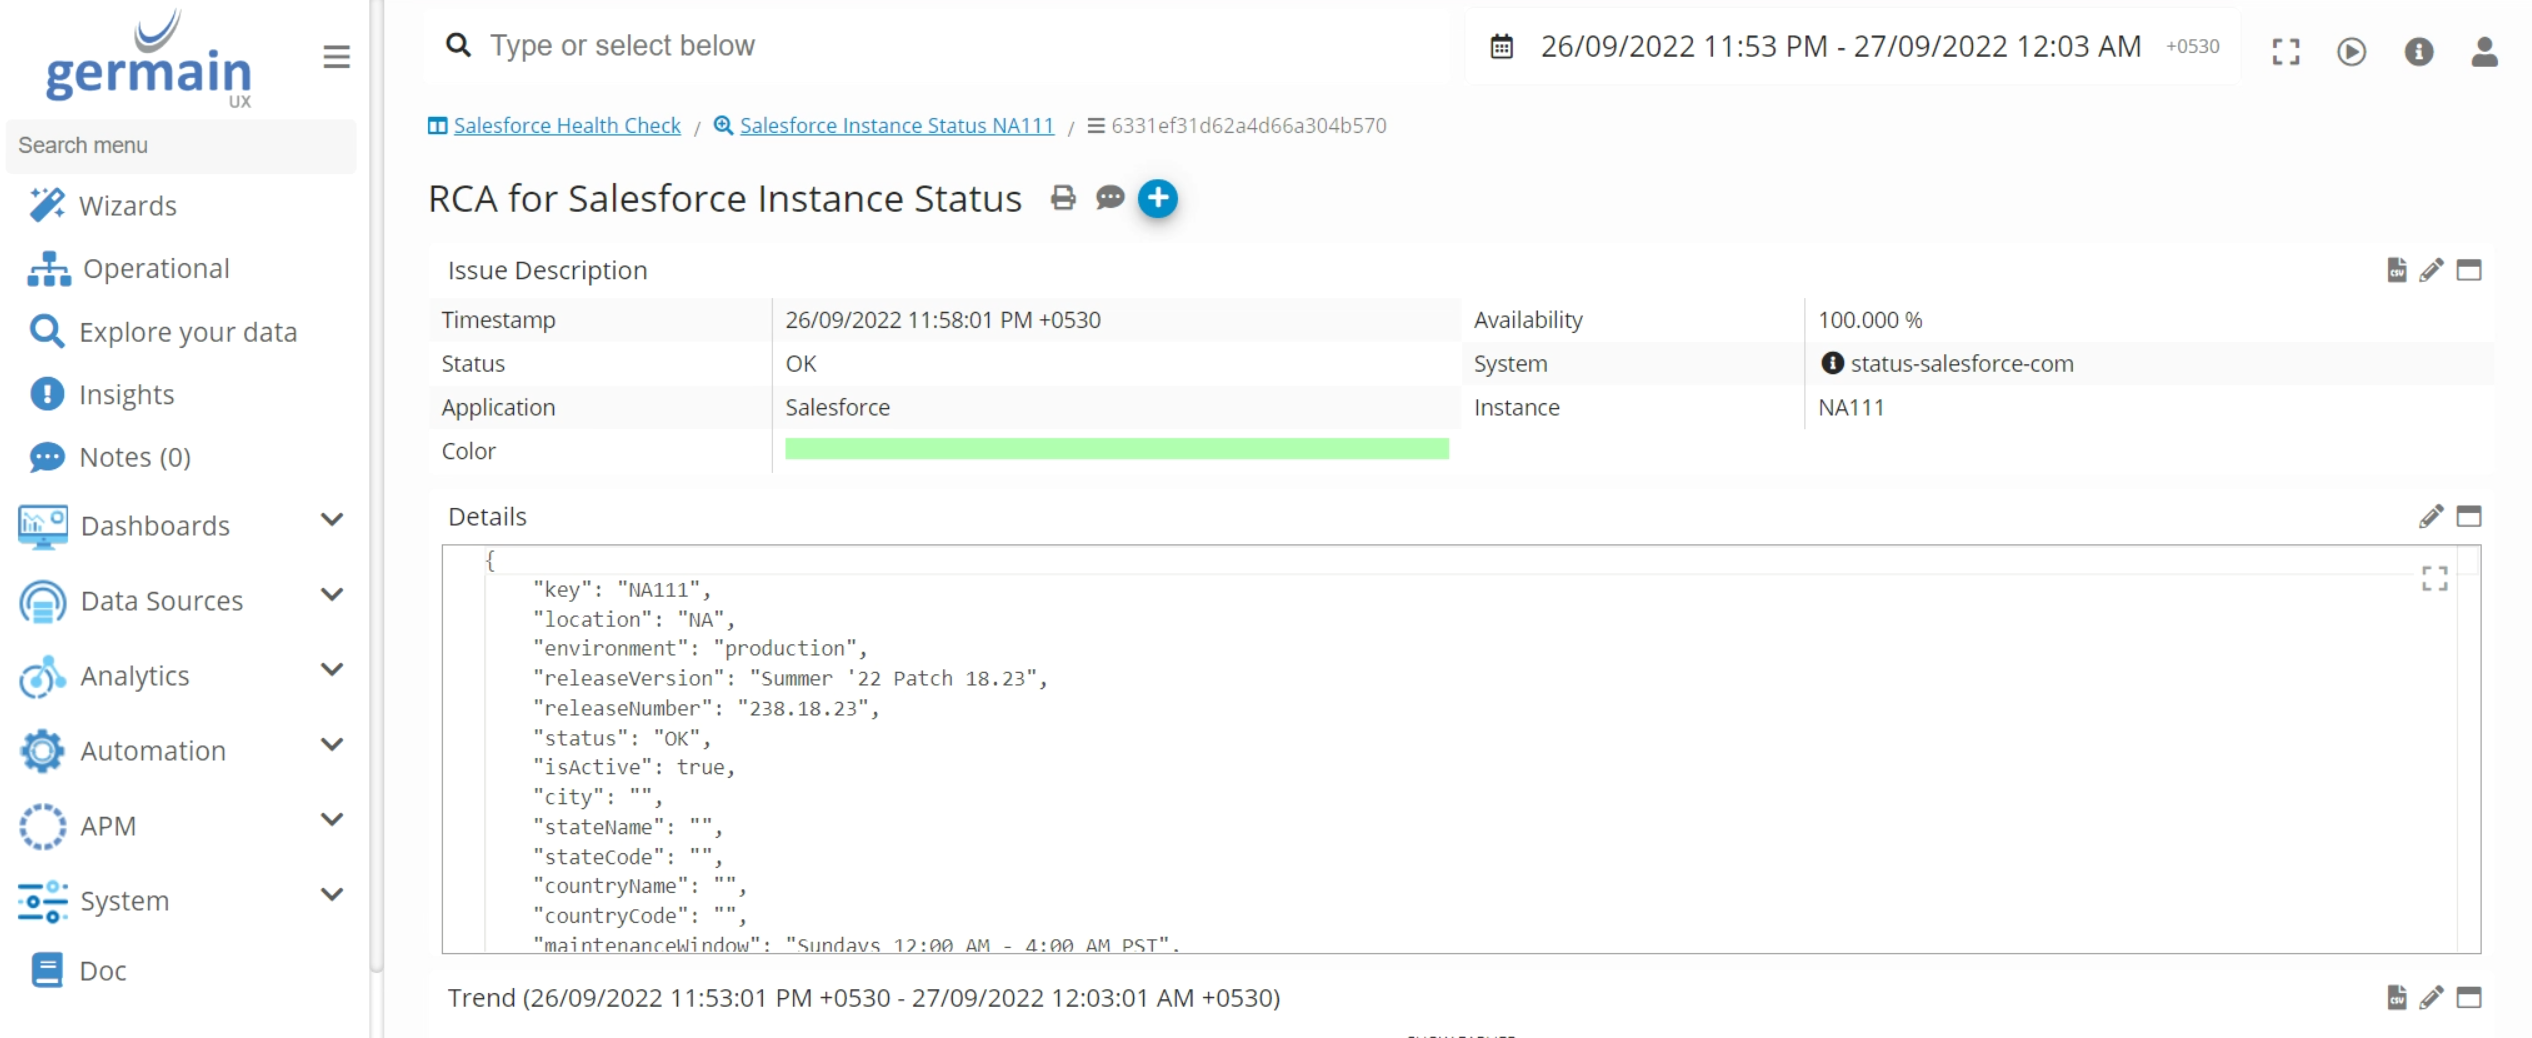 Salesforce Instance Status details